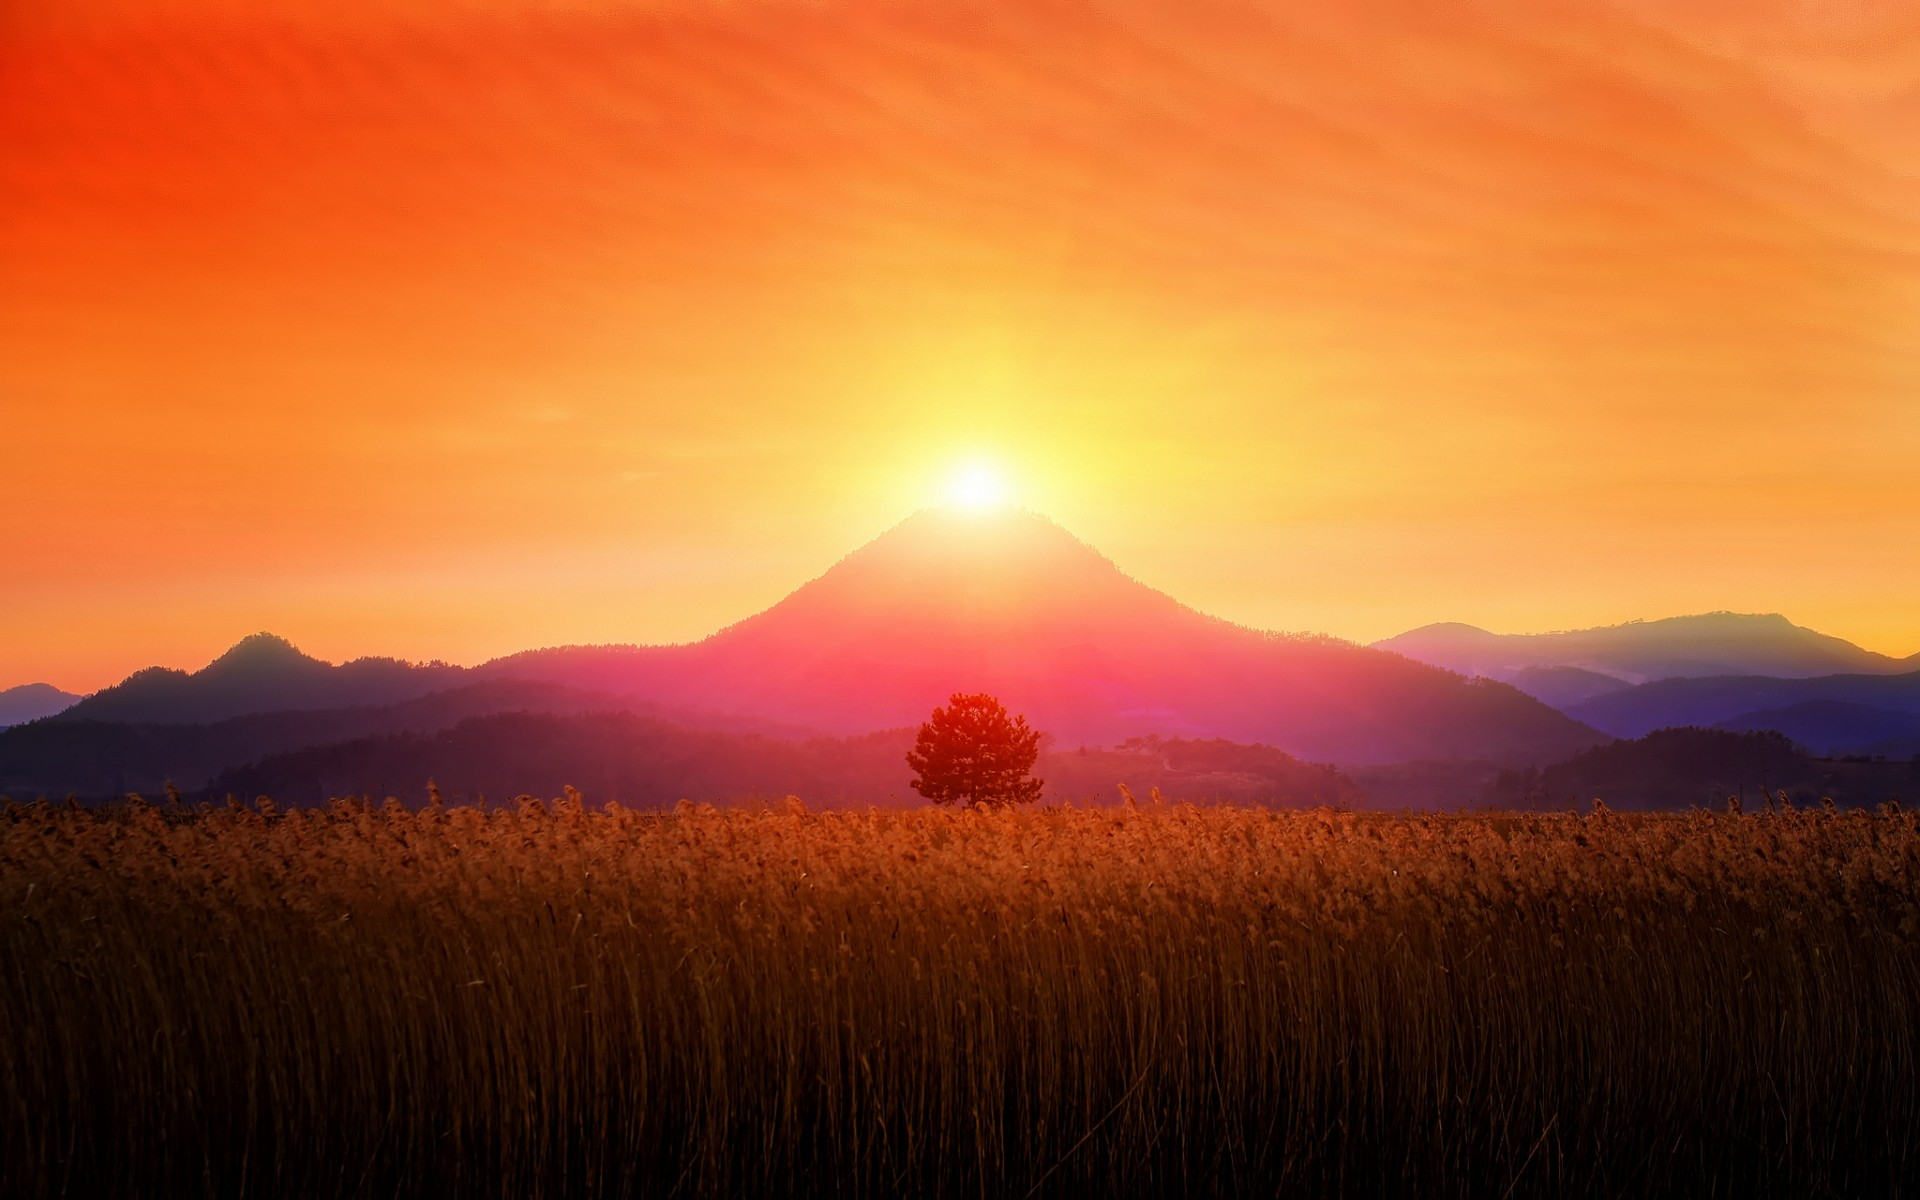 زیباترین عکس استوک غروب خورشید برای چاپ بنر